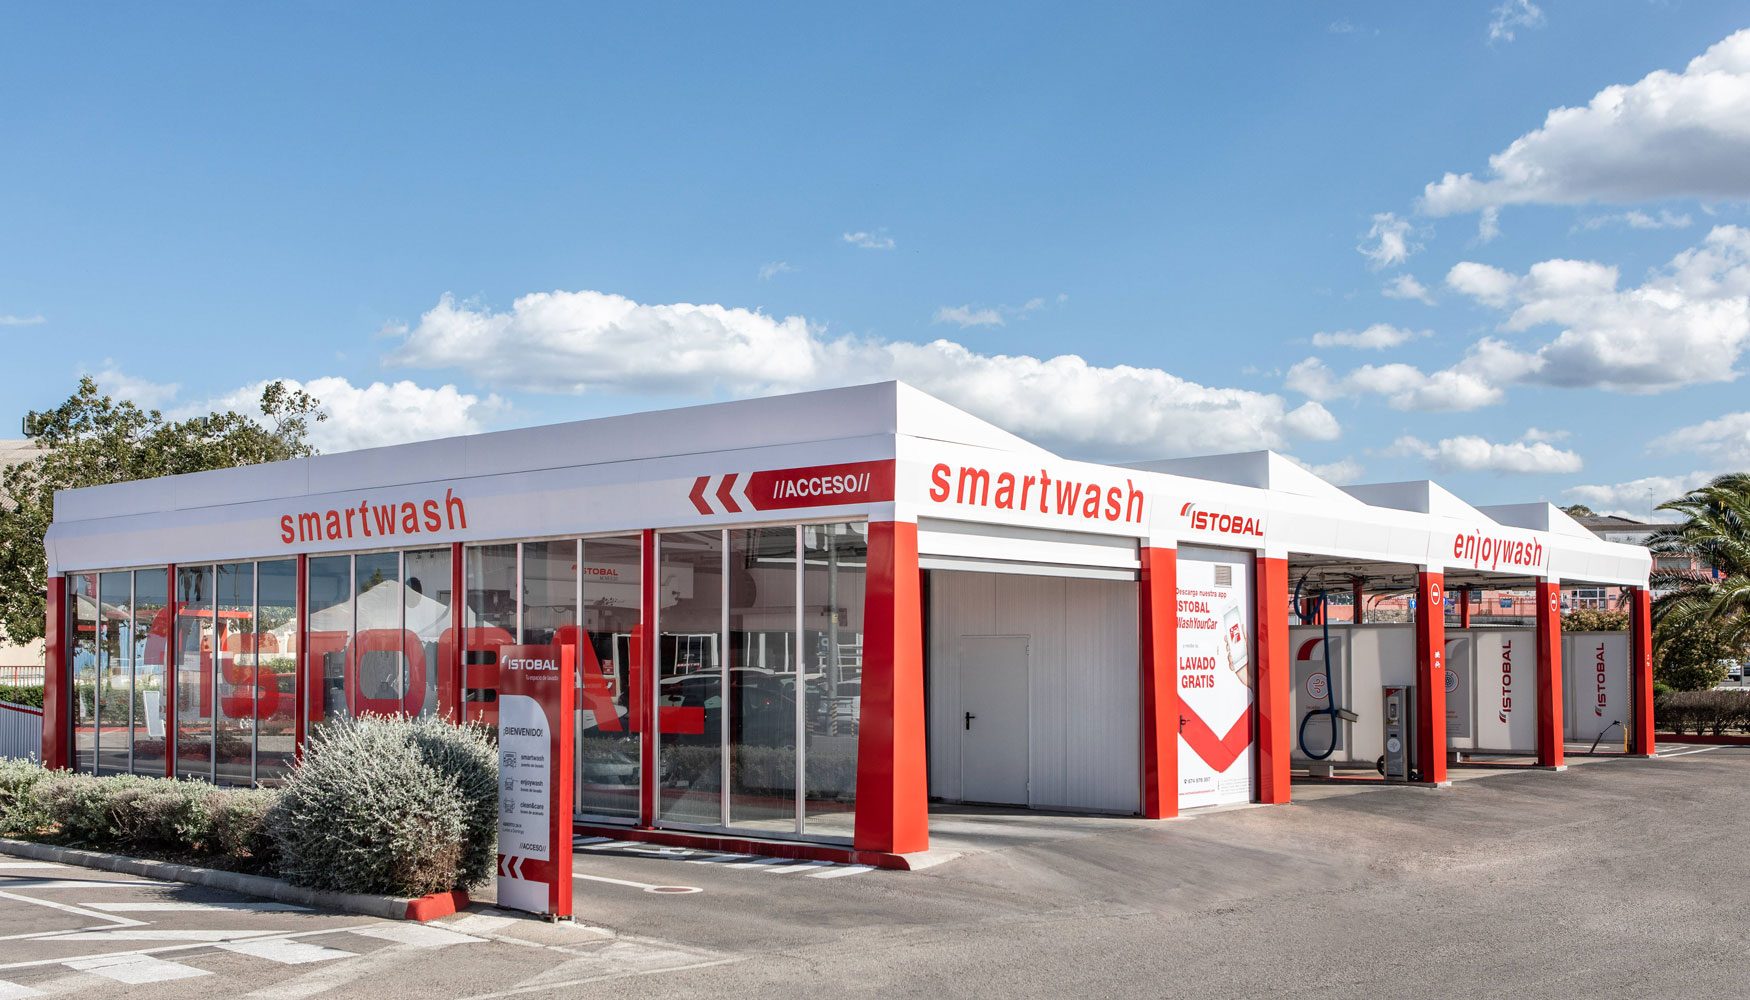 La tecnologa Smartwash es la nica del mercado que logra instalaciones 100% conectadas para obtener el mximo rendimiento y eficiencia en los...